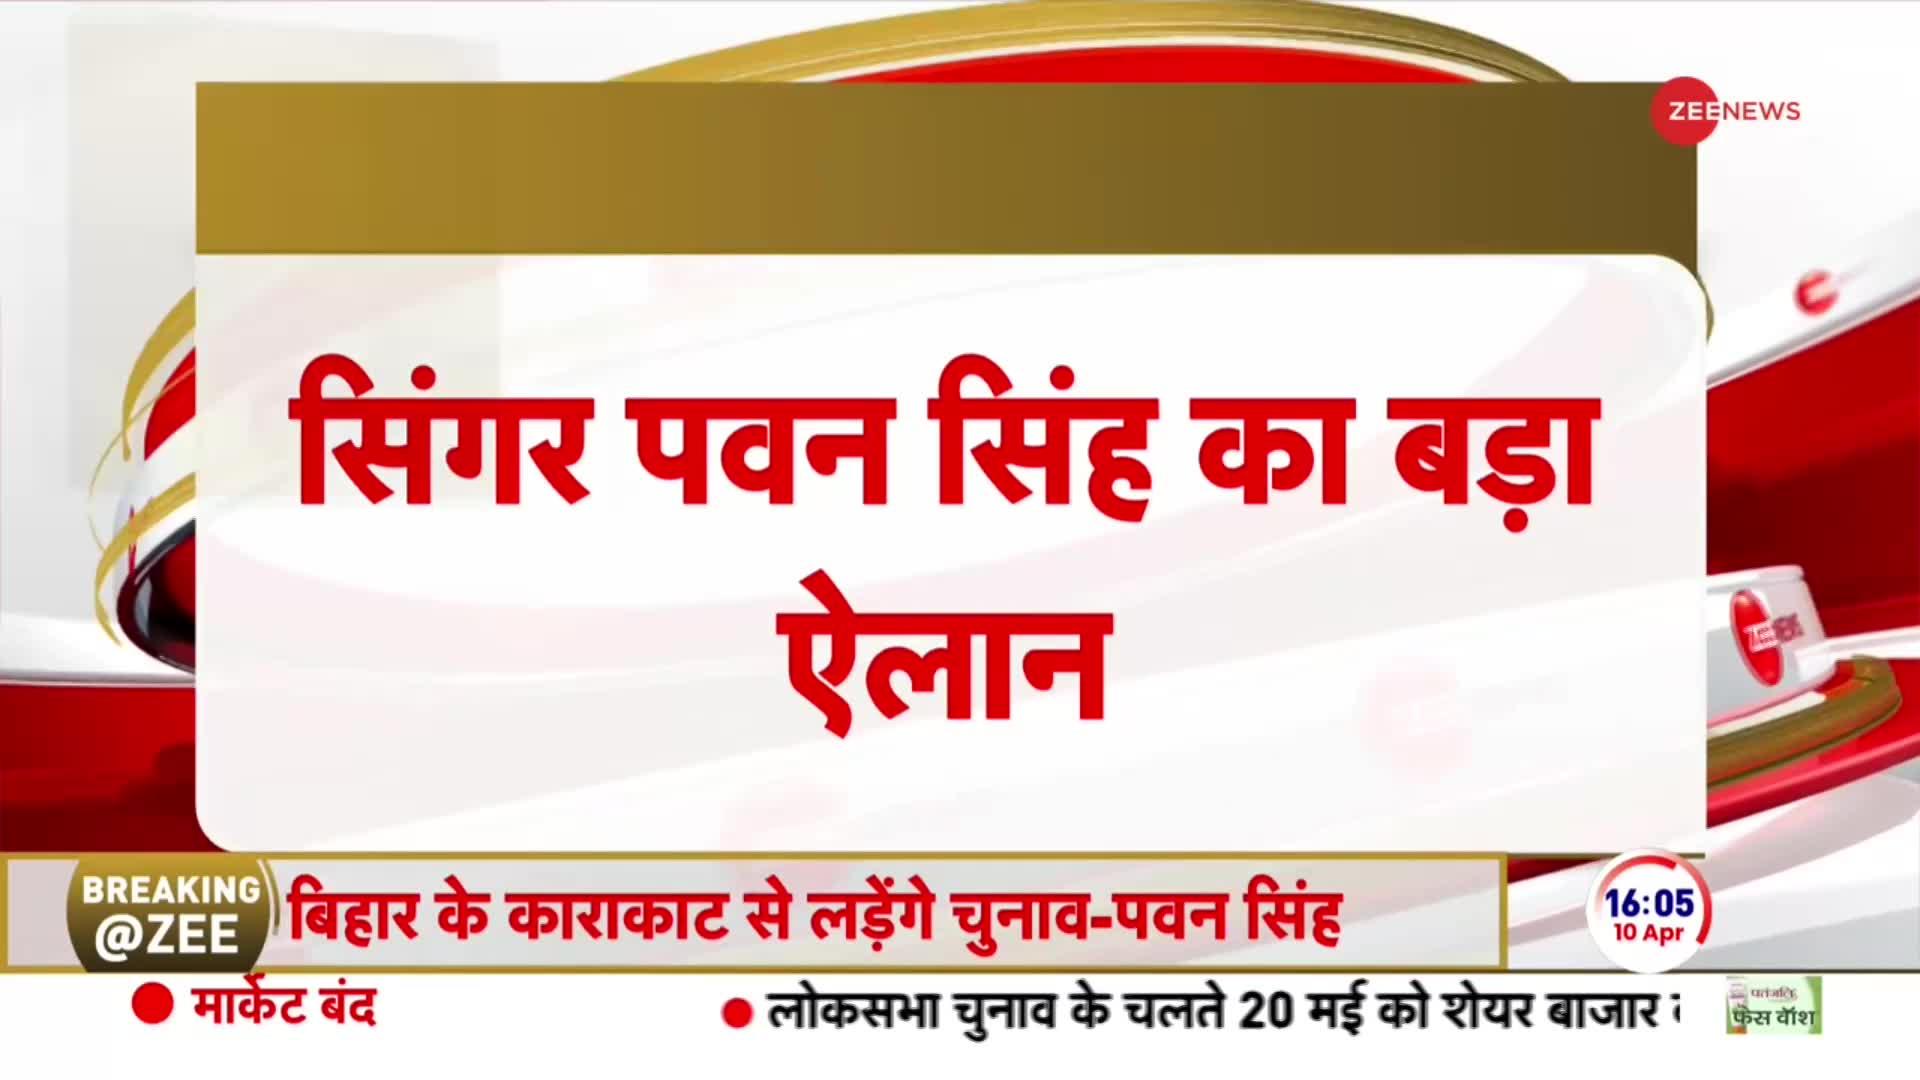 Breaking News: बिहार की काराकाट से चुनाव लड़ेंगे पवन सिंह